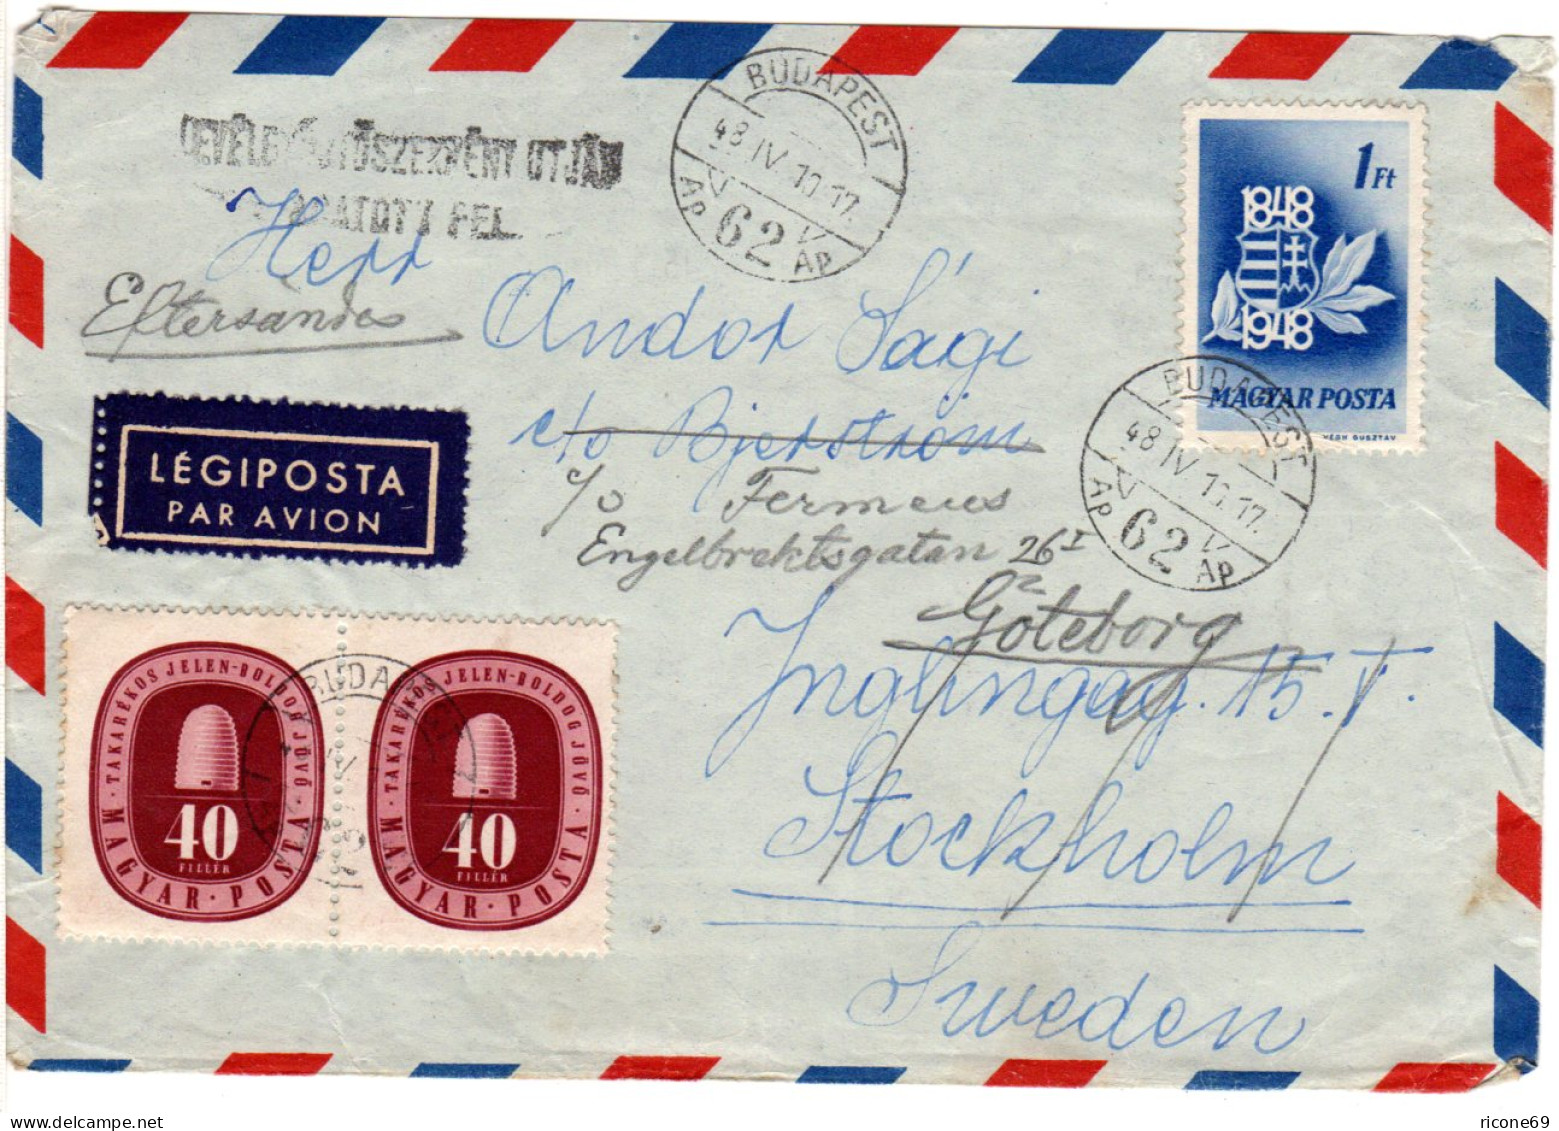 Ungarn 1948, Paar 40 F.+1 Ft. Auf Luftpost Brief V. Budapest N. Schweden. - Covers & Documents